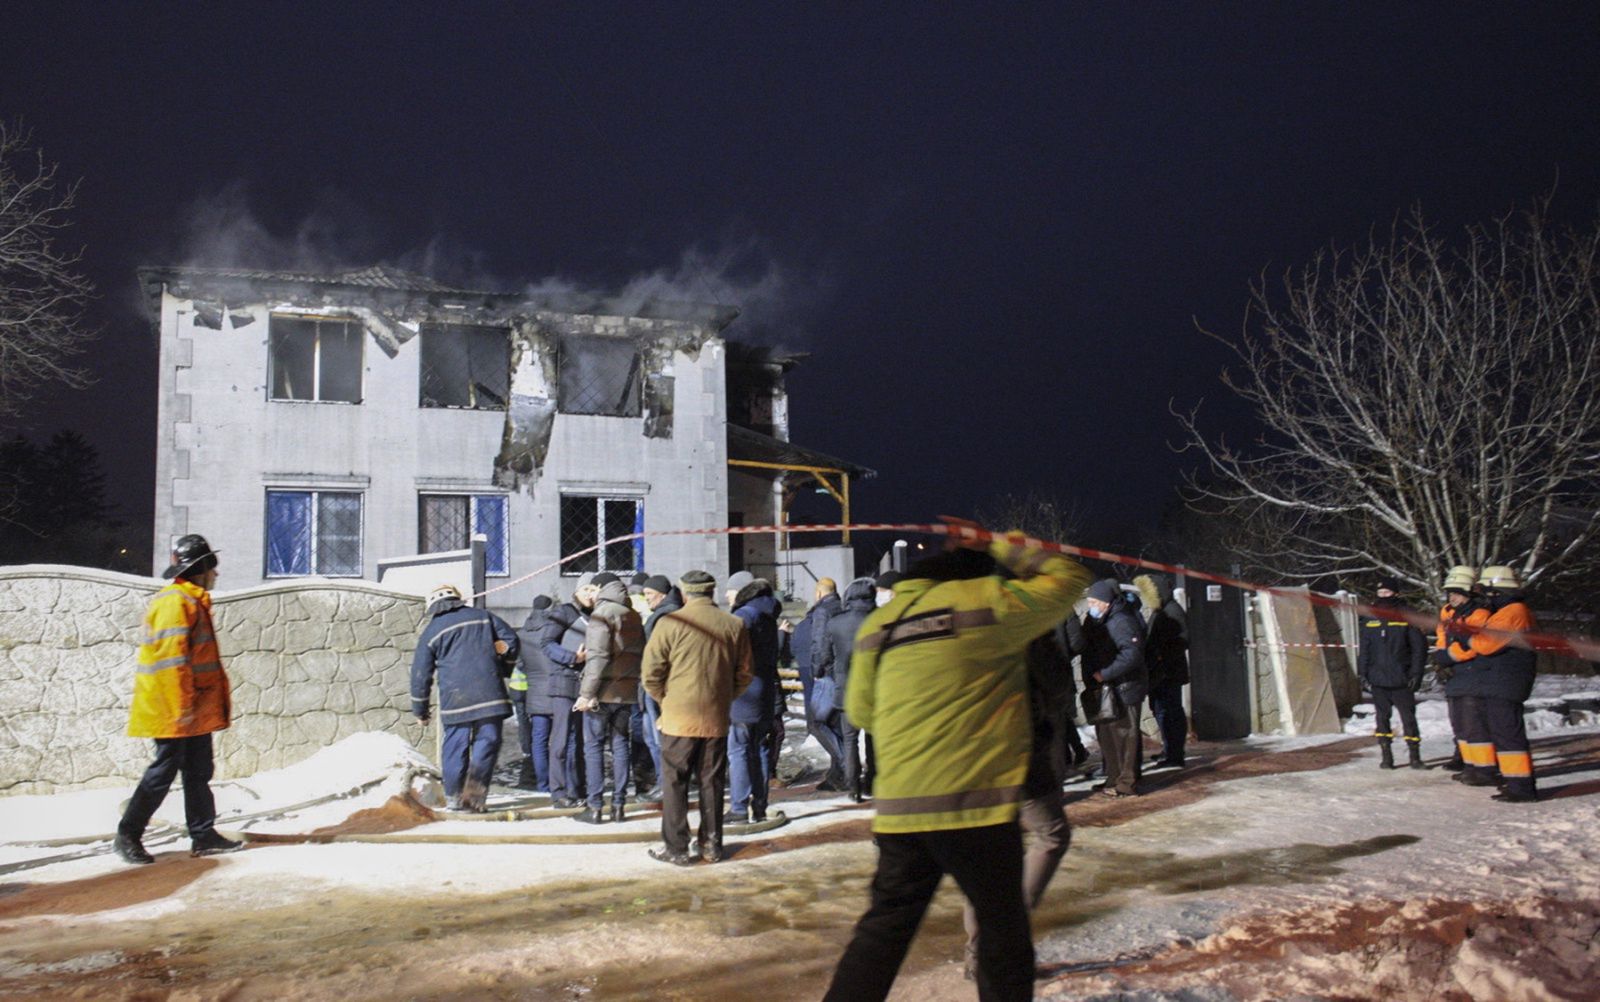 Szczegóły tragedii w Charkowie wstrząsnęły krajem. Żałoba narodowa na Ukrainie